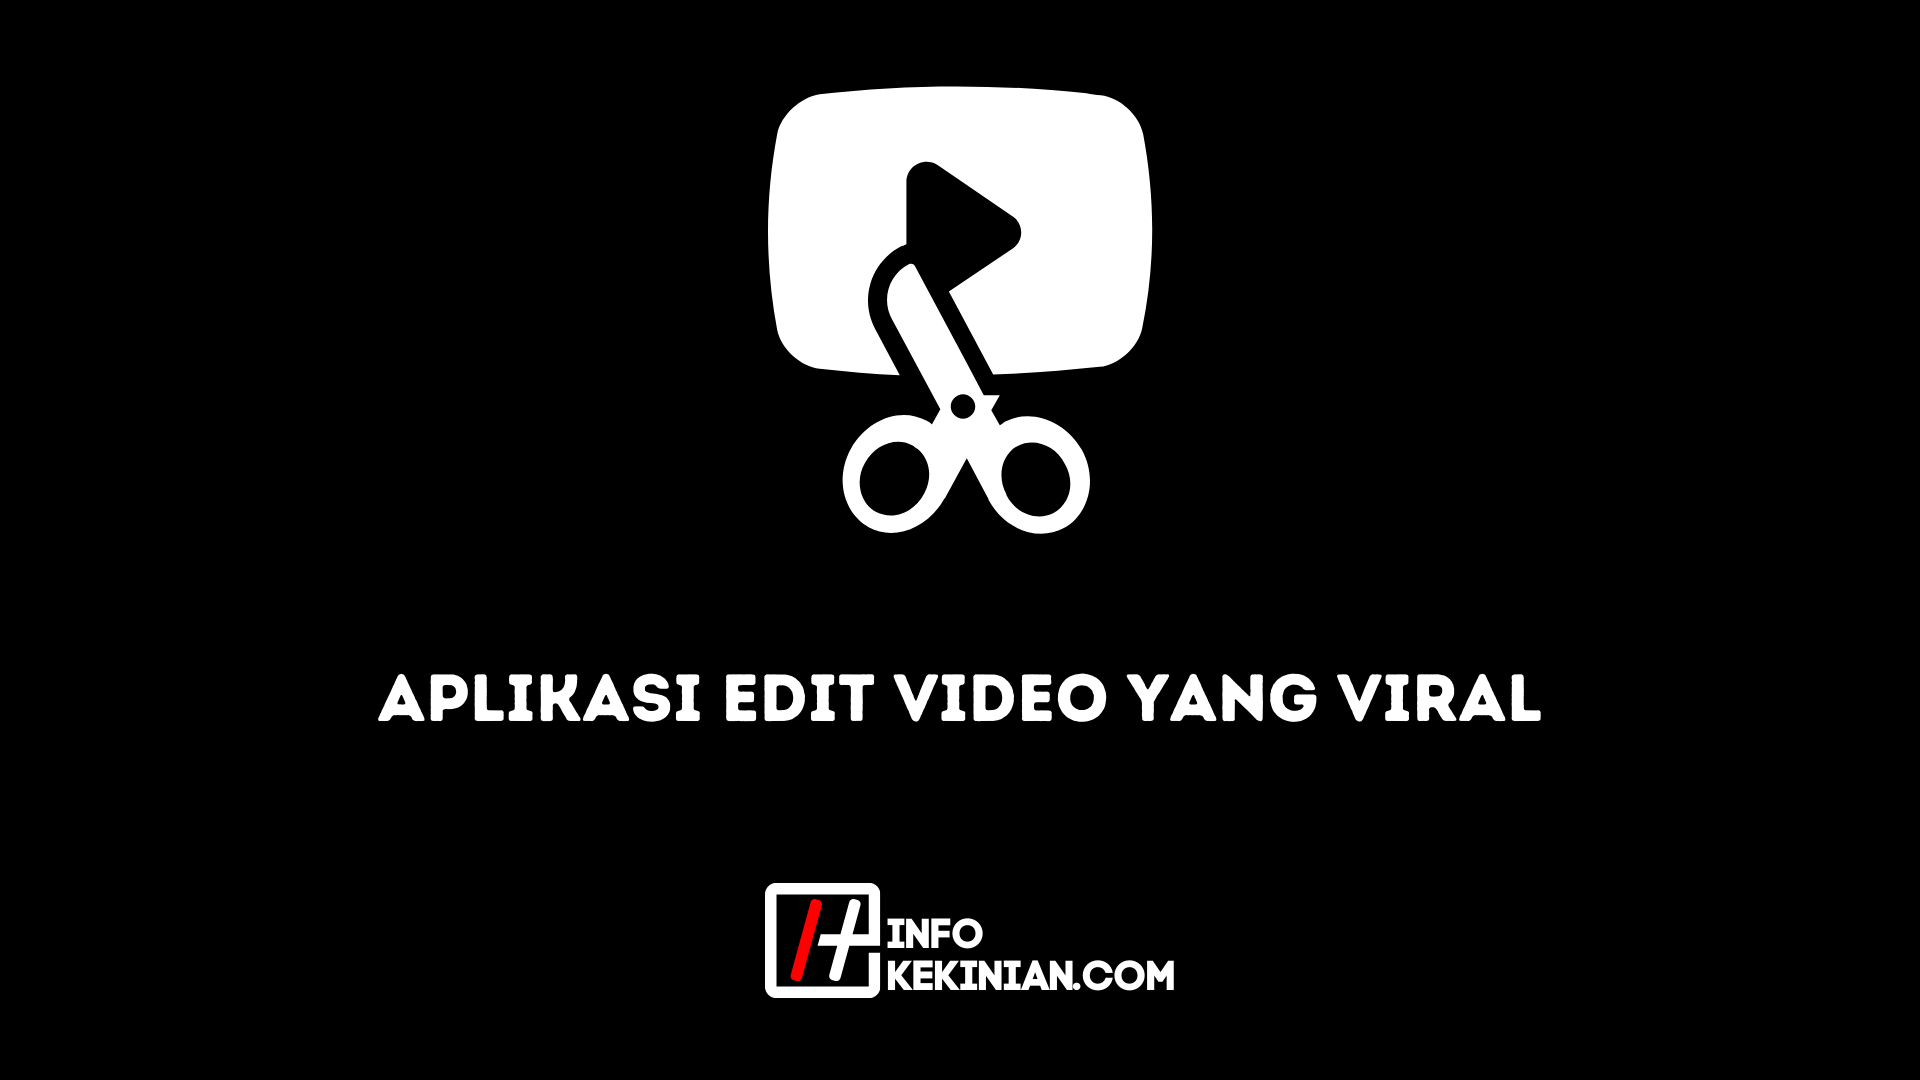 Application de montage vidéo virale